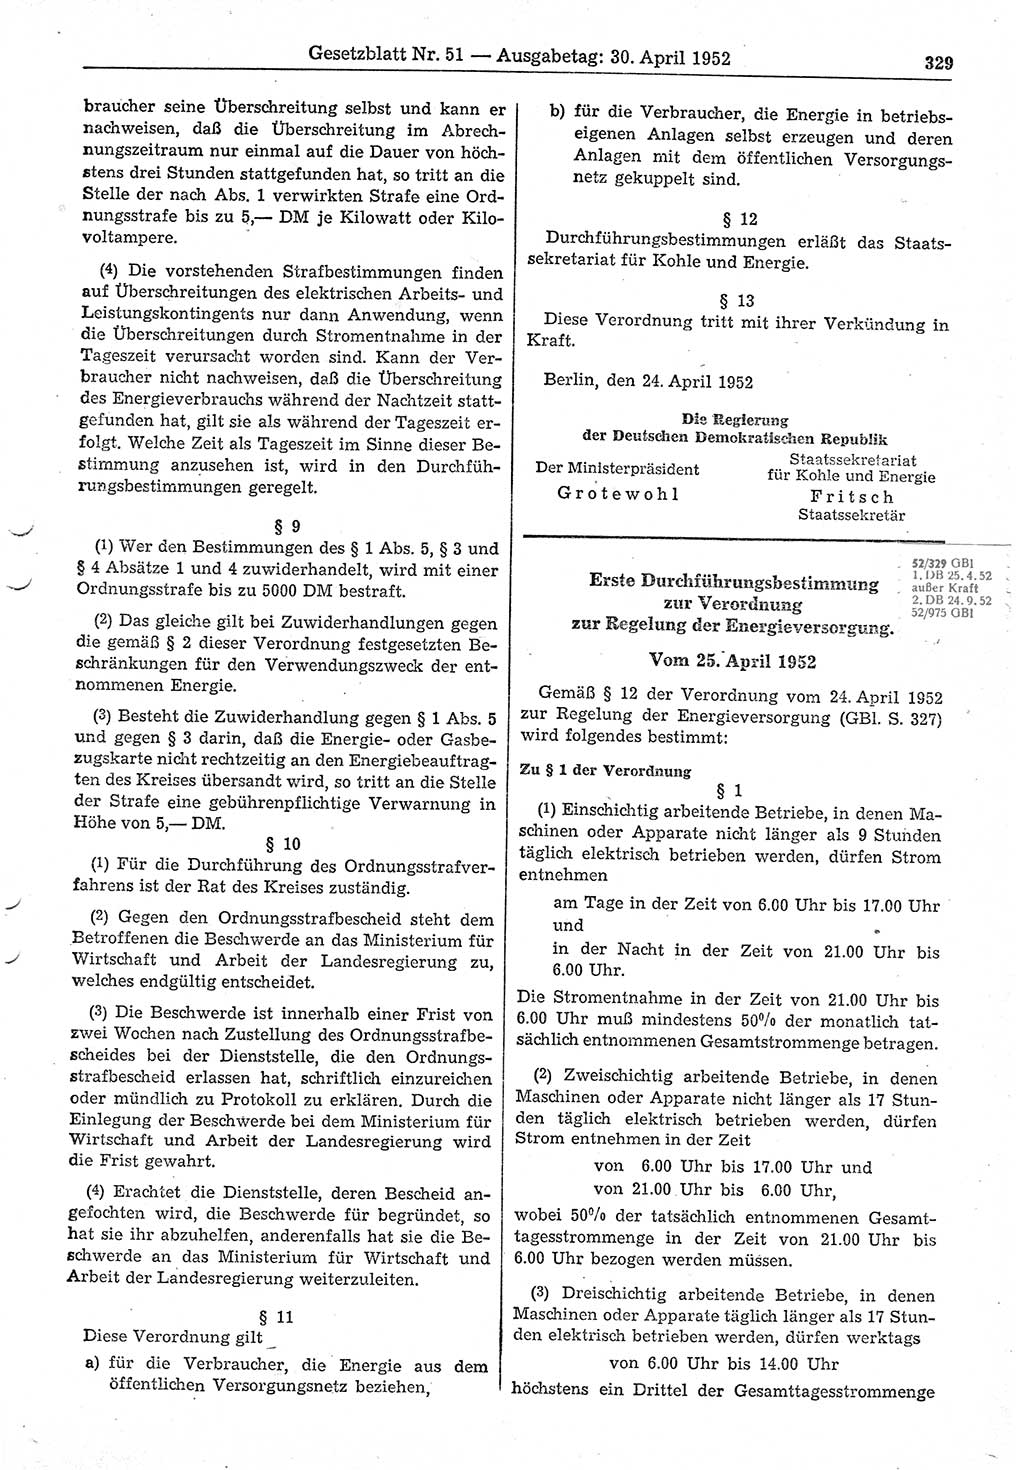 Gesetzblatt (GBl.) der Deutschen Demokratischen Republik (DDR) 1952, Seite 329 (GBl. DDR 1952, S. 329)